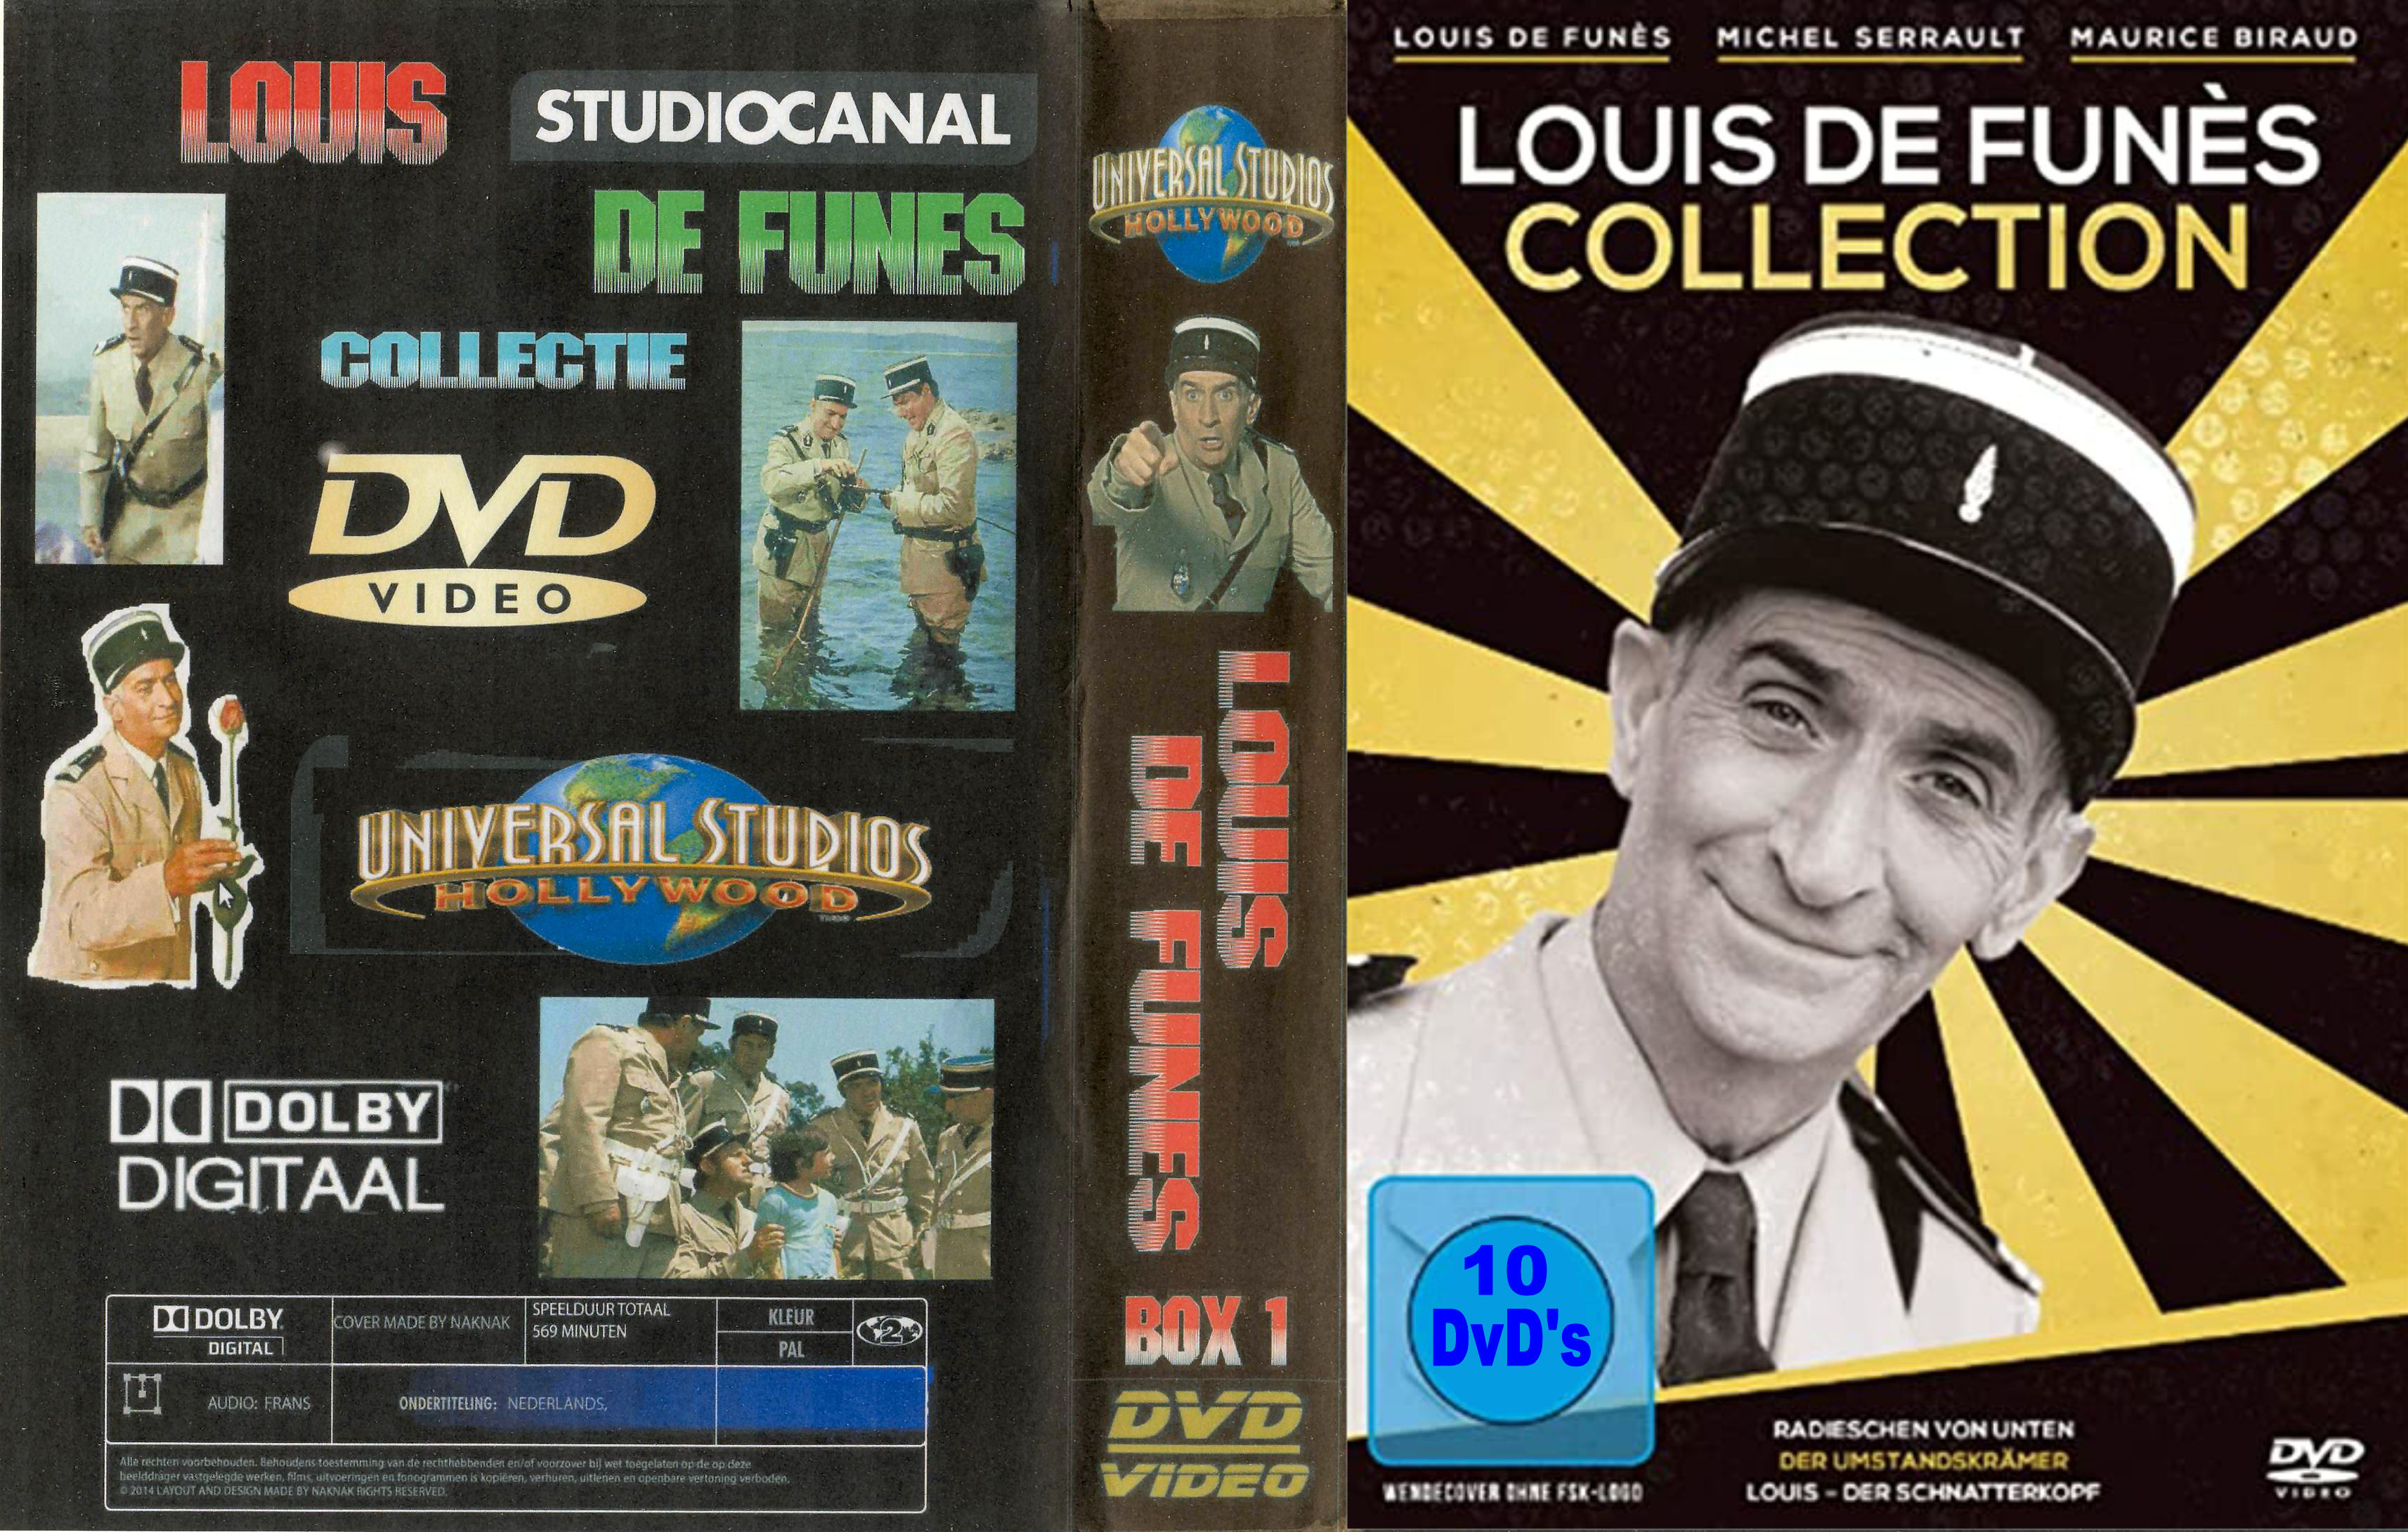 Louis de Funes Collectie ( 30 DvD's ) -DvD 8